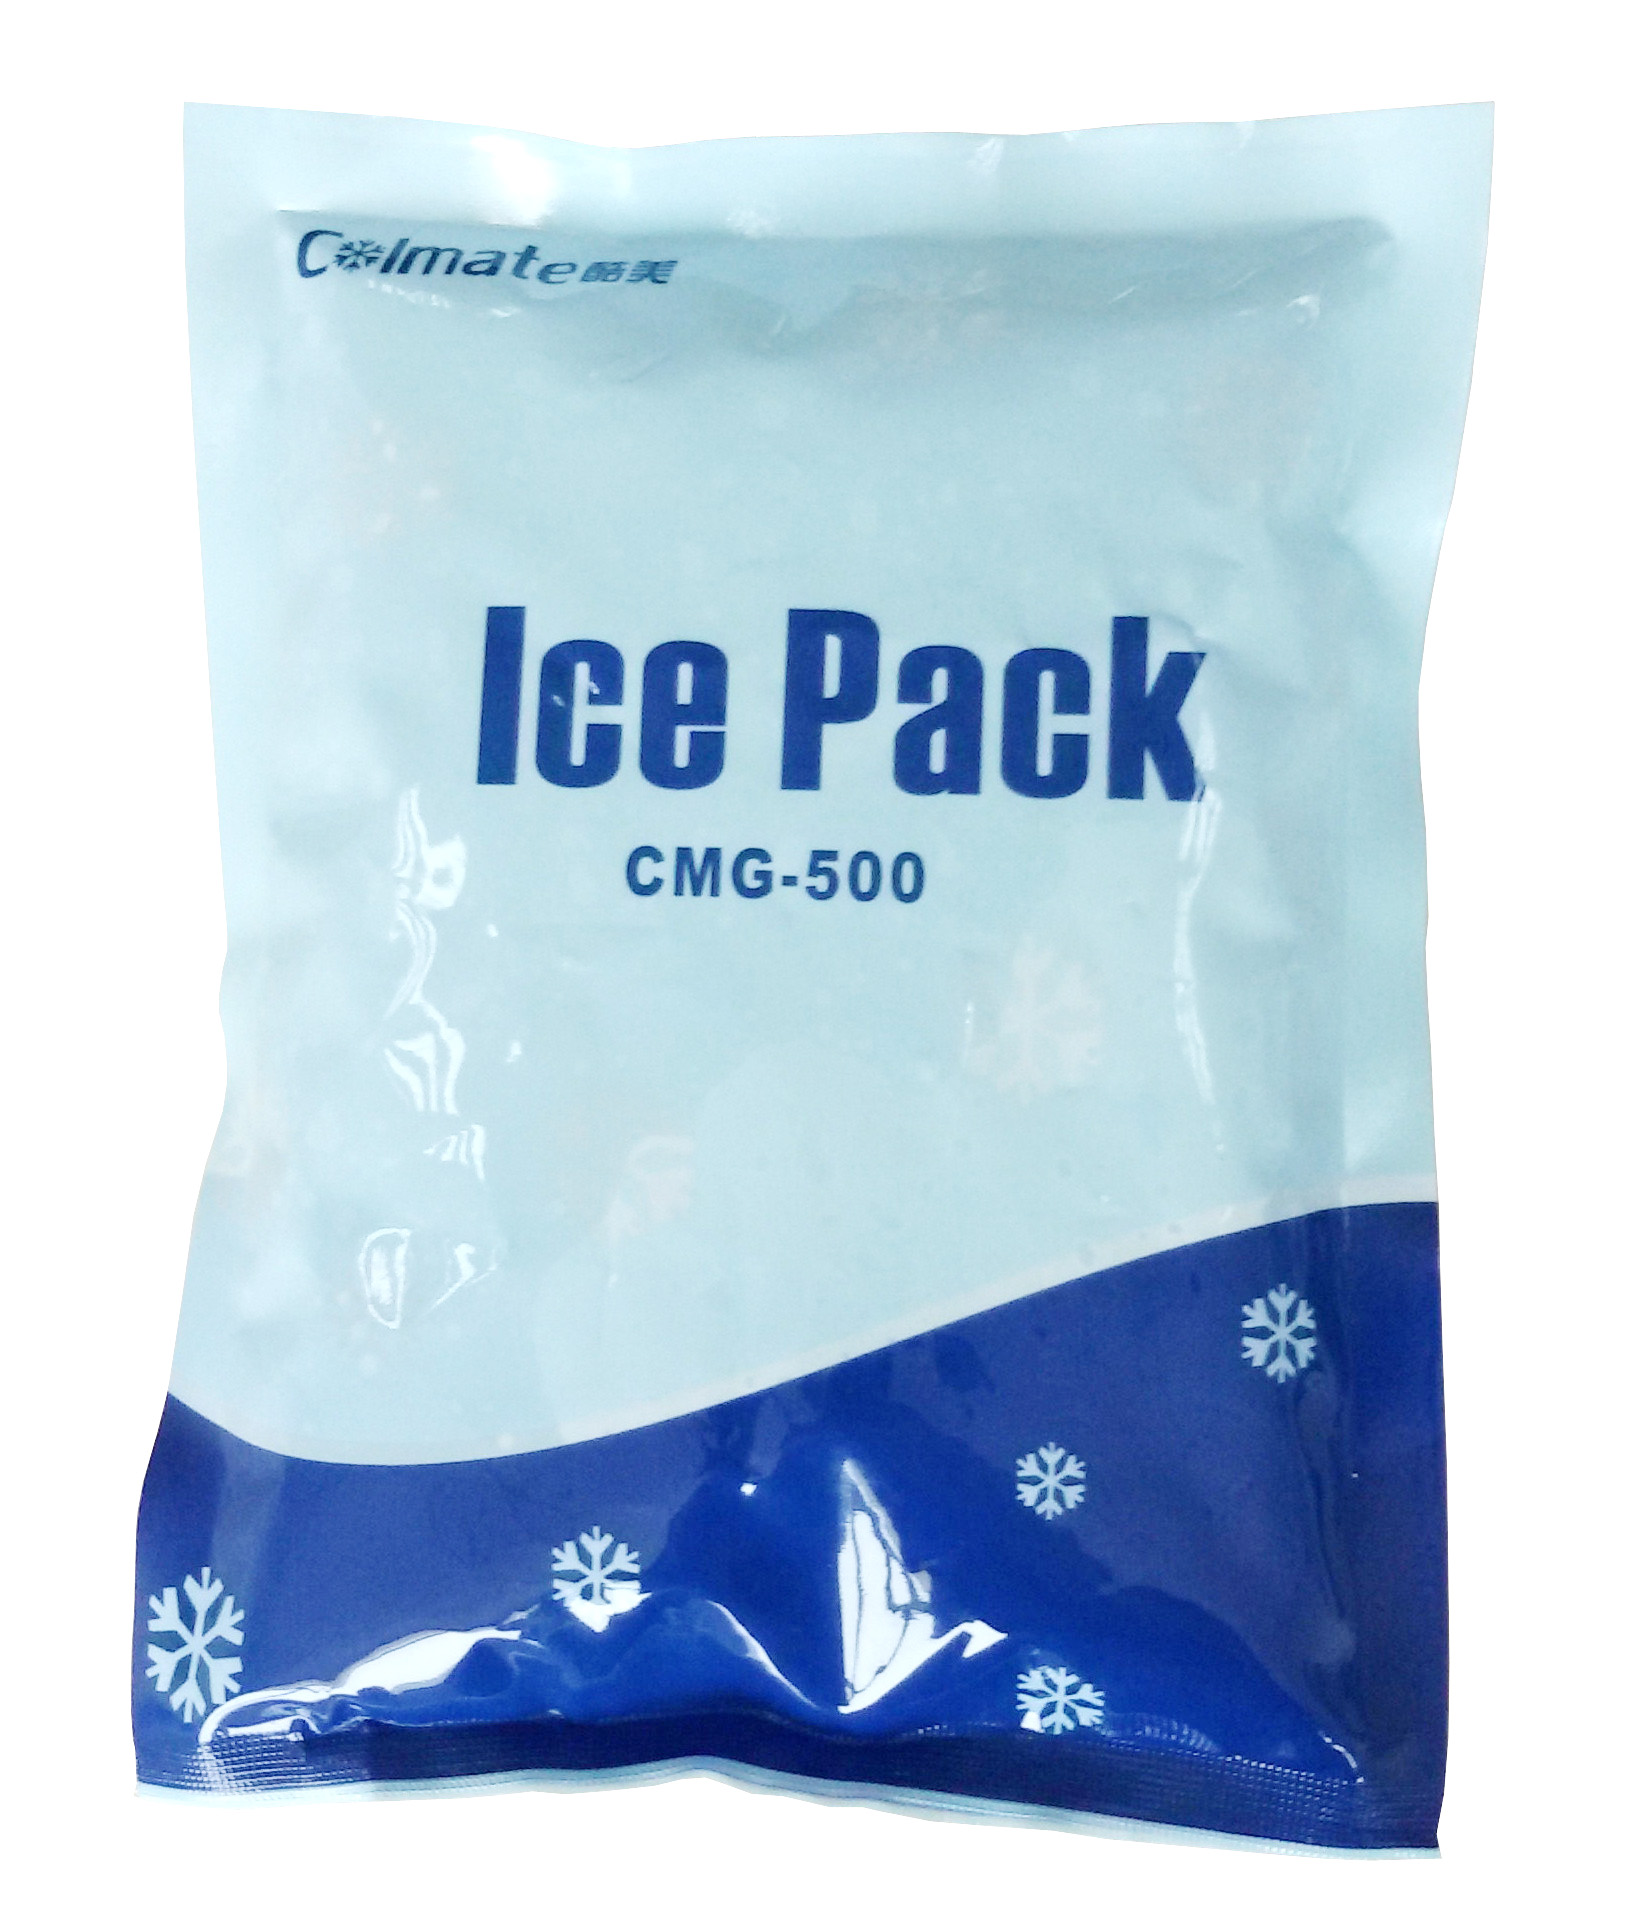 酷美多功能高效冰盒冰袋ICE PACK